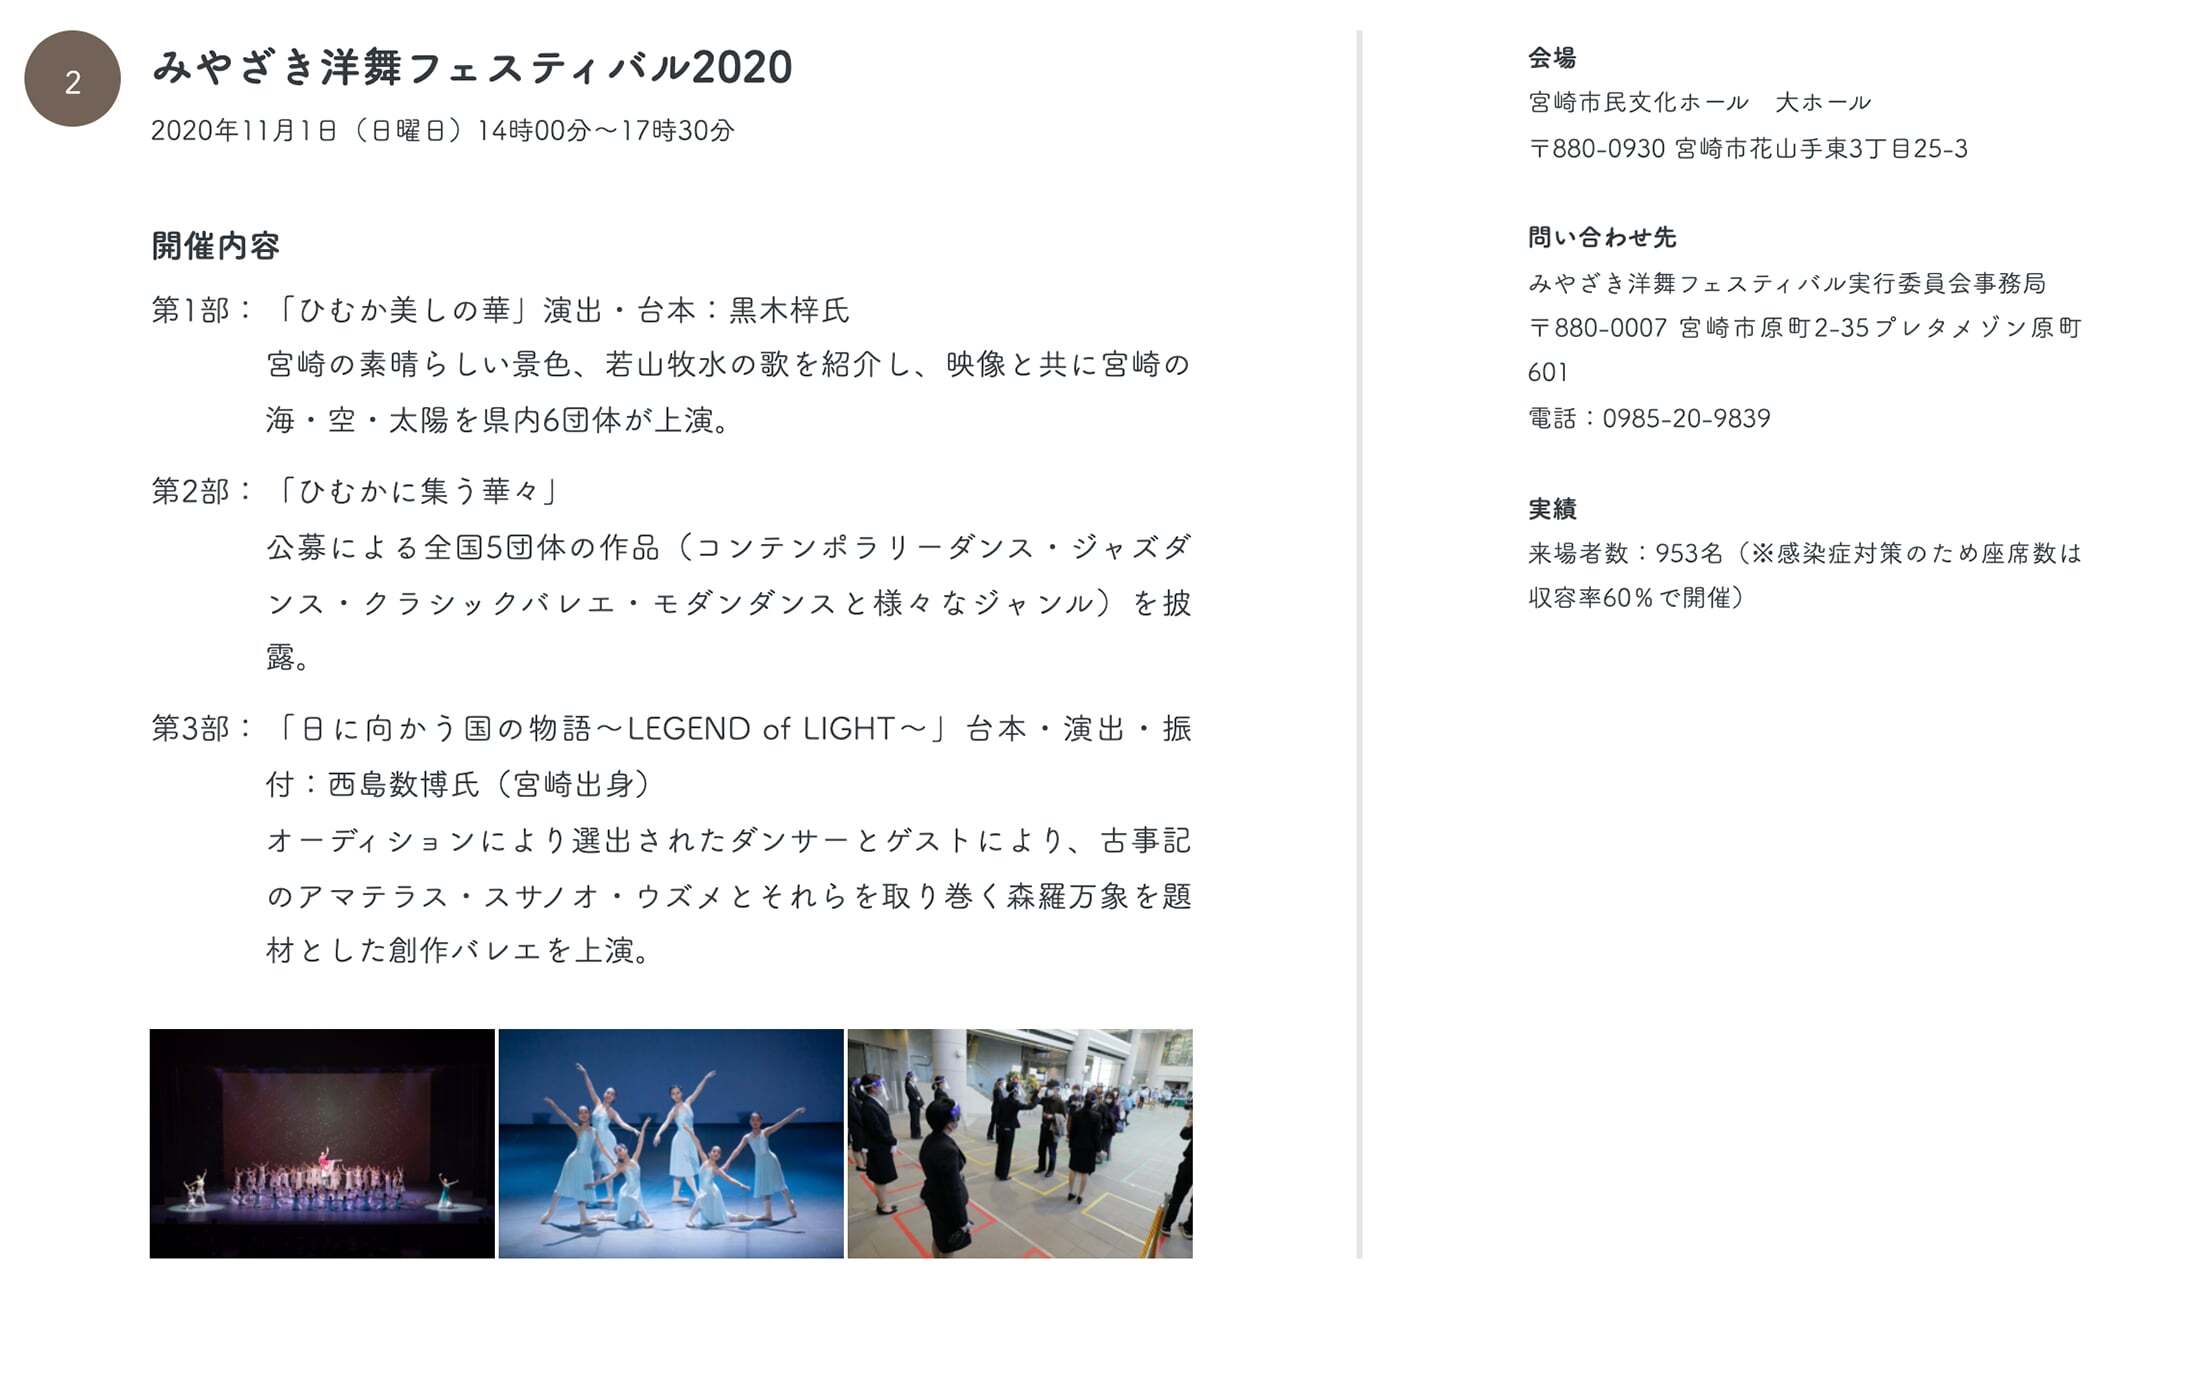 2みやざき洋舞フェスティバル2020